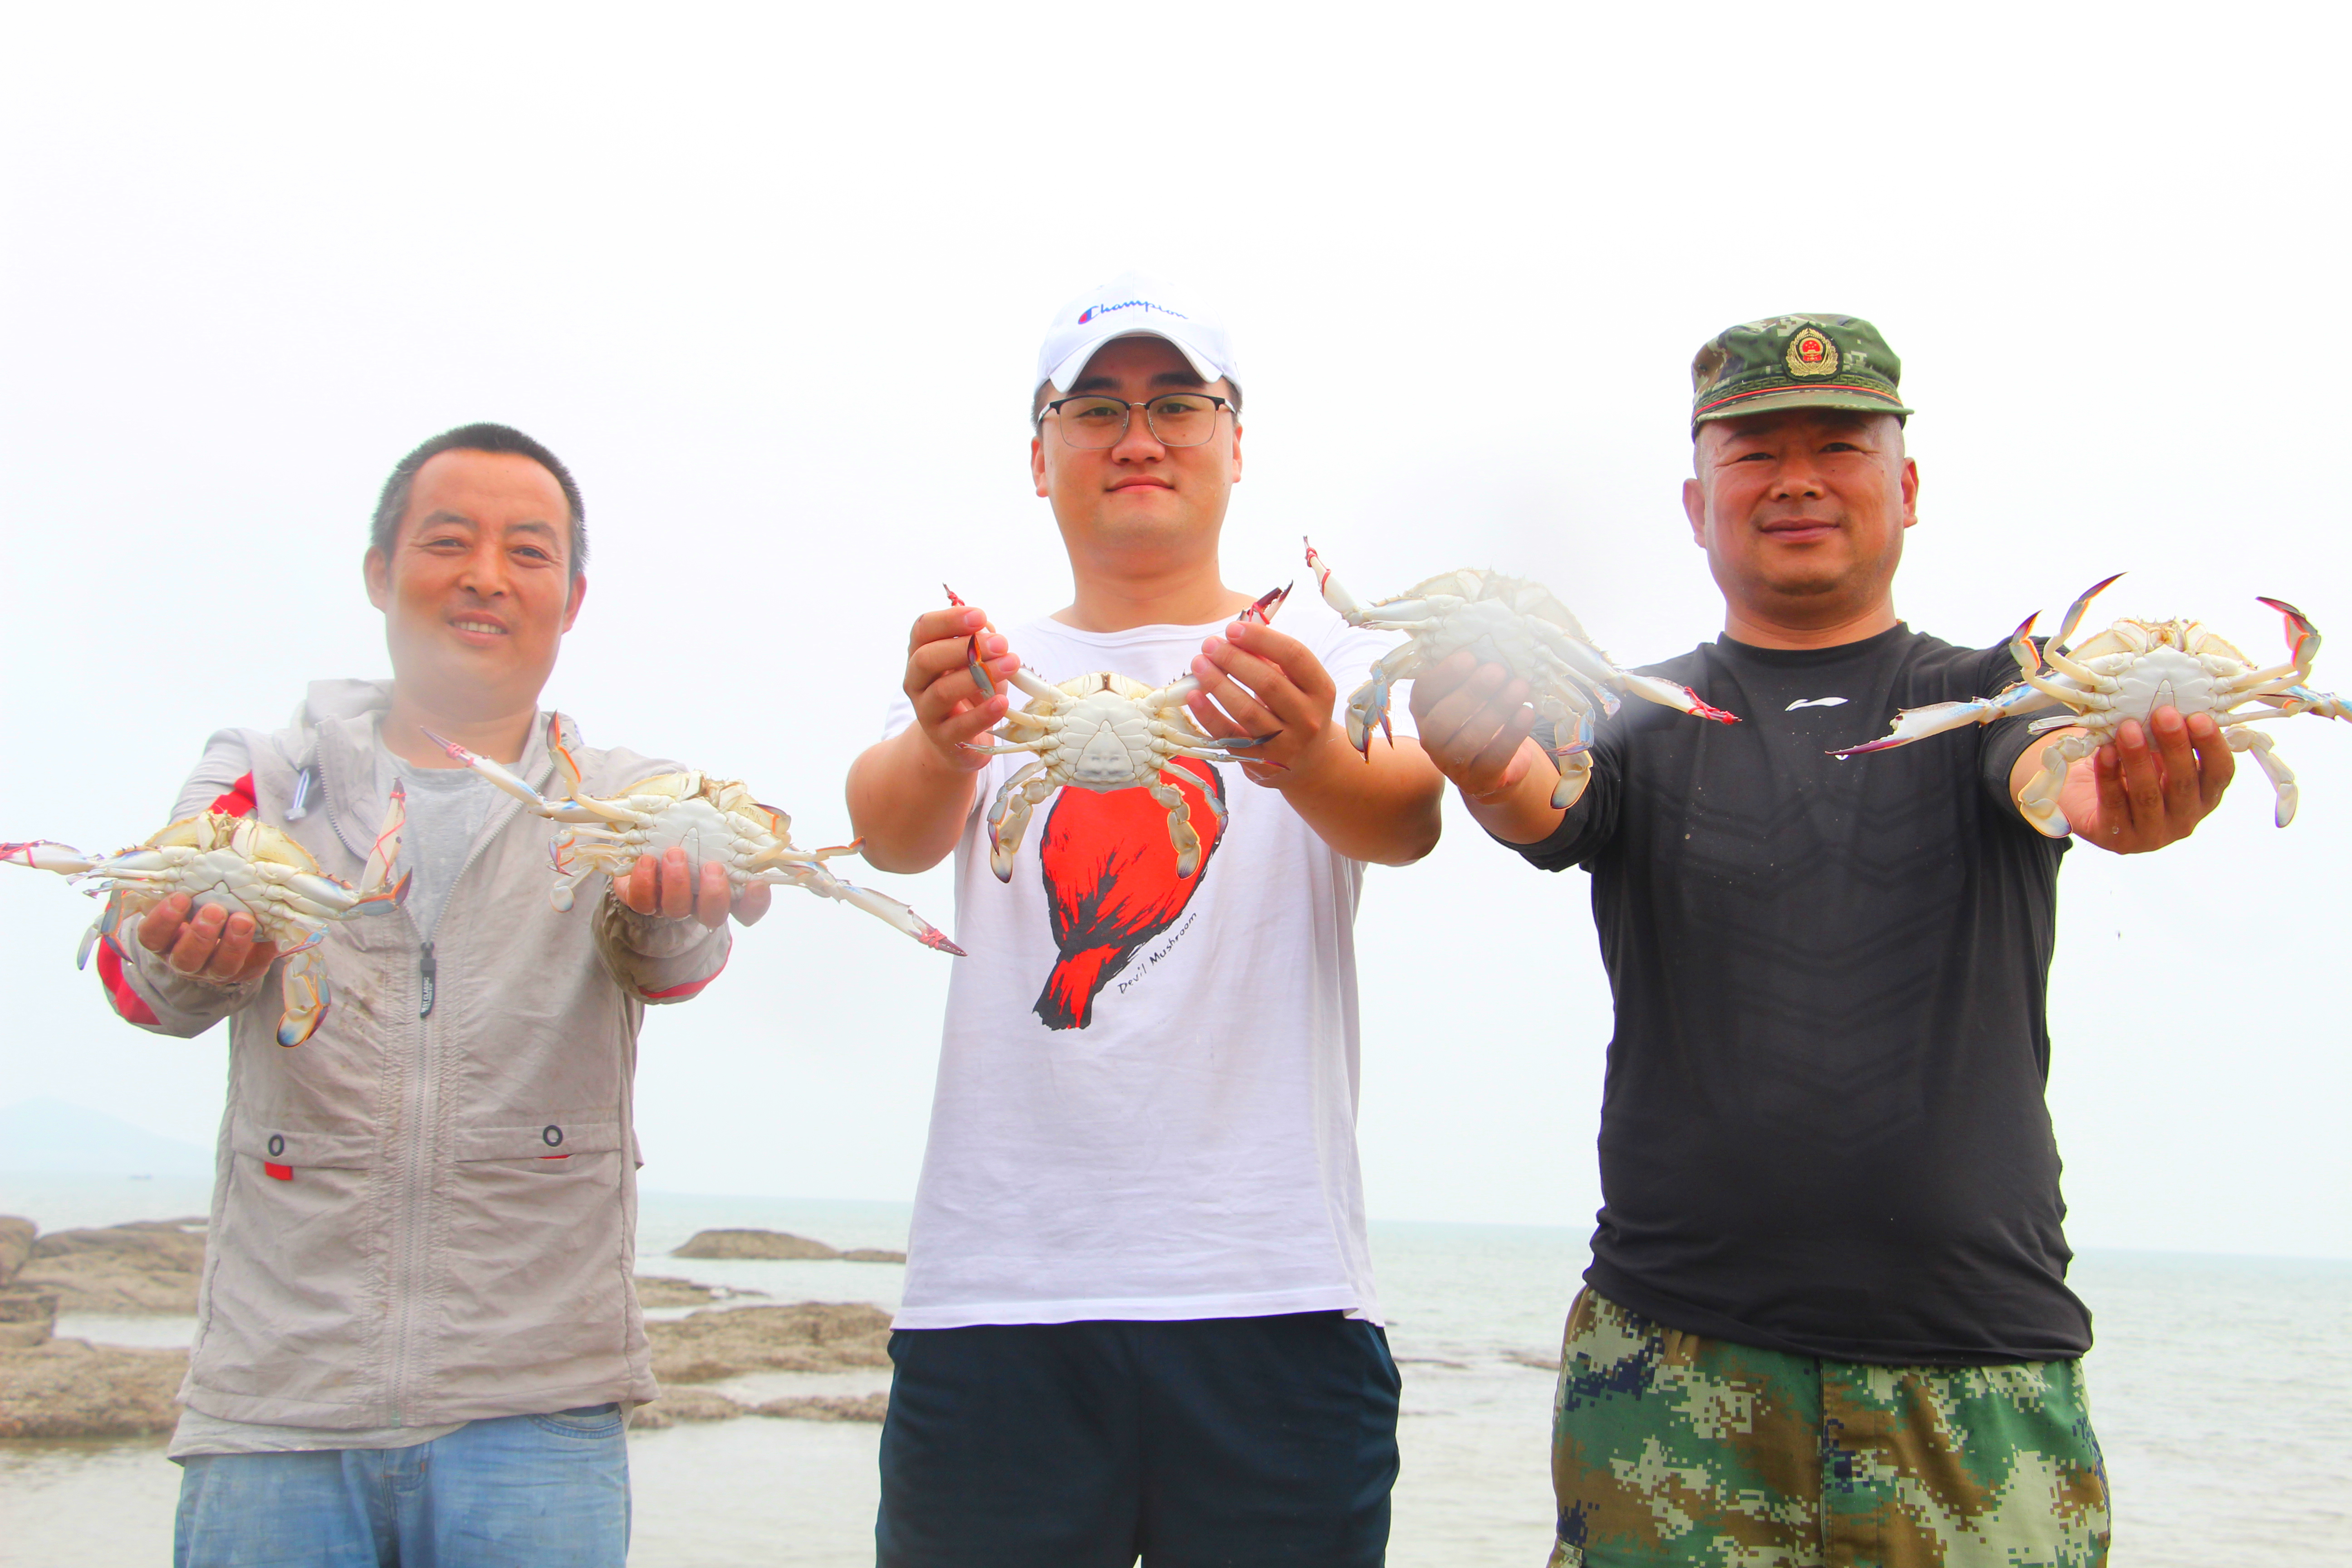 王哥庄街道:码头一新迎开海,蟹虾抢手渔民乐